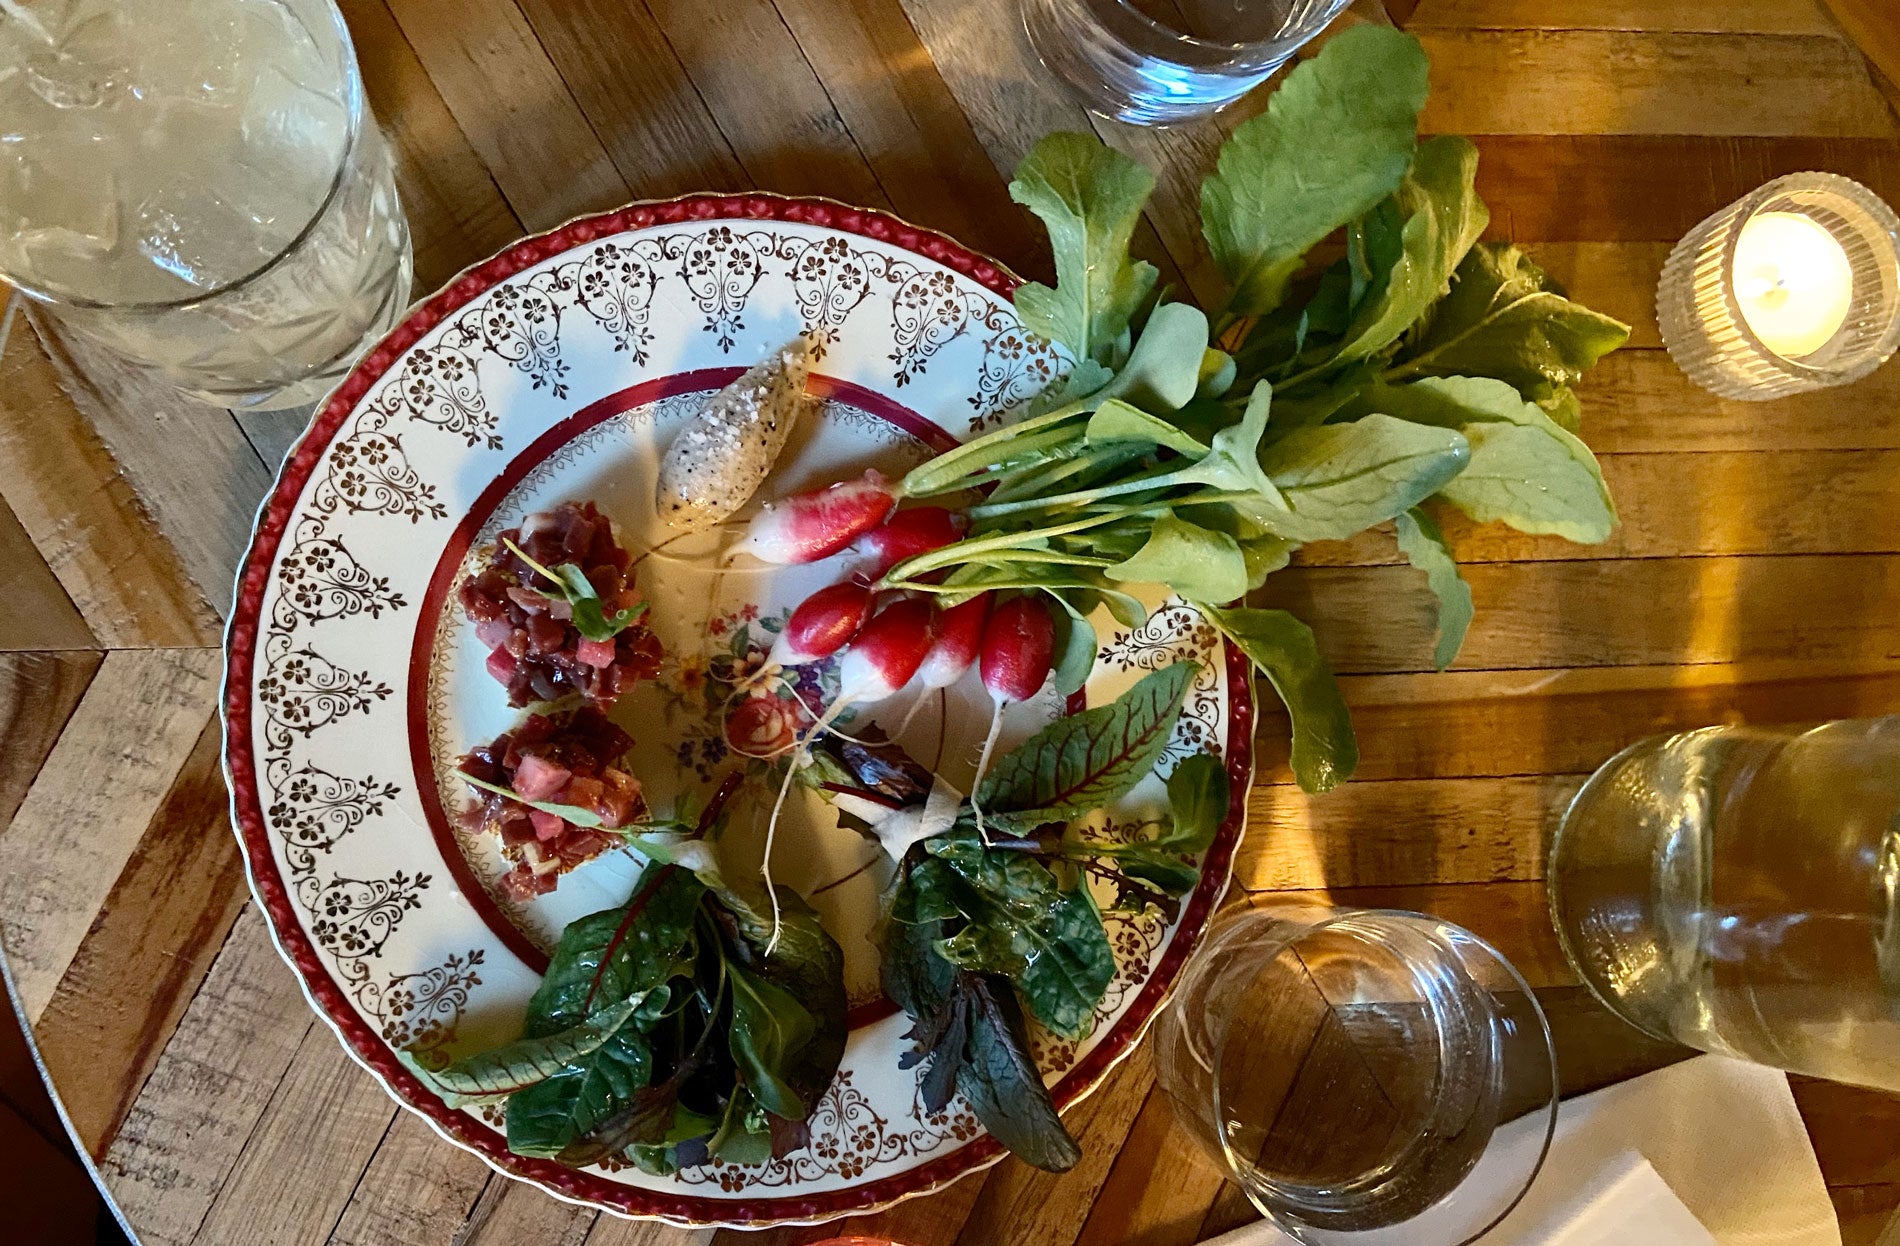 The Market Gardener's Fresh Take on Farm-to-Table